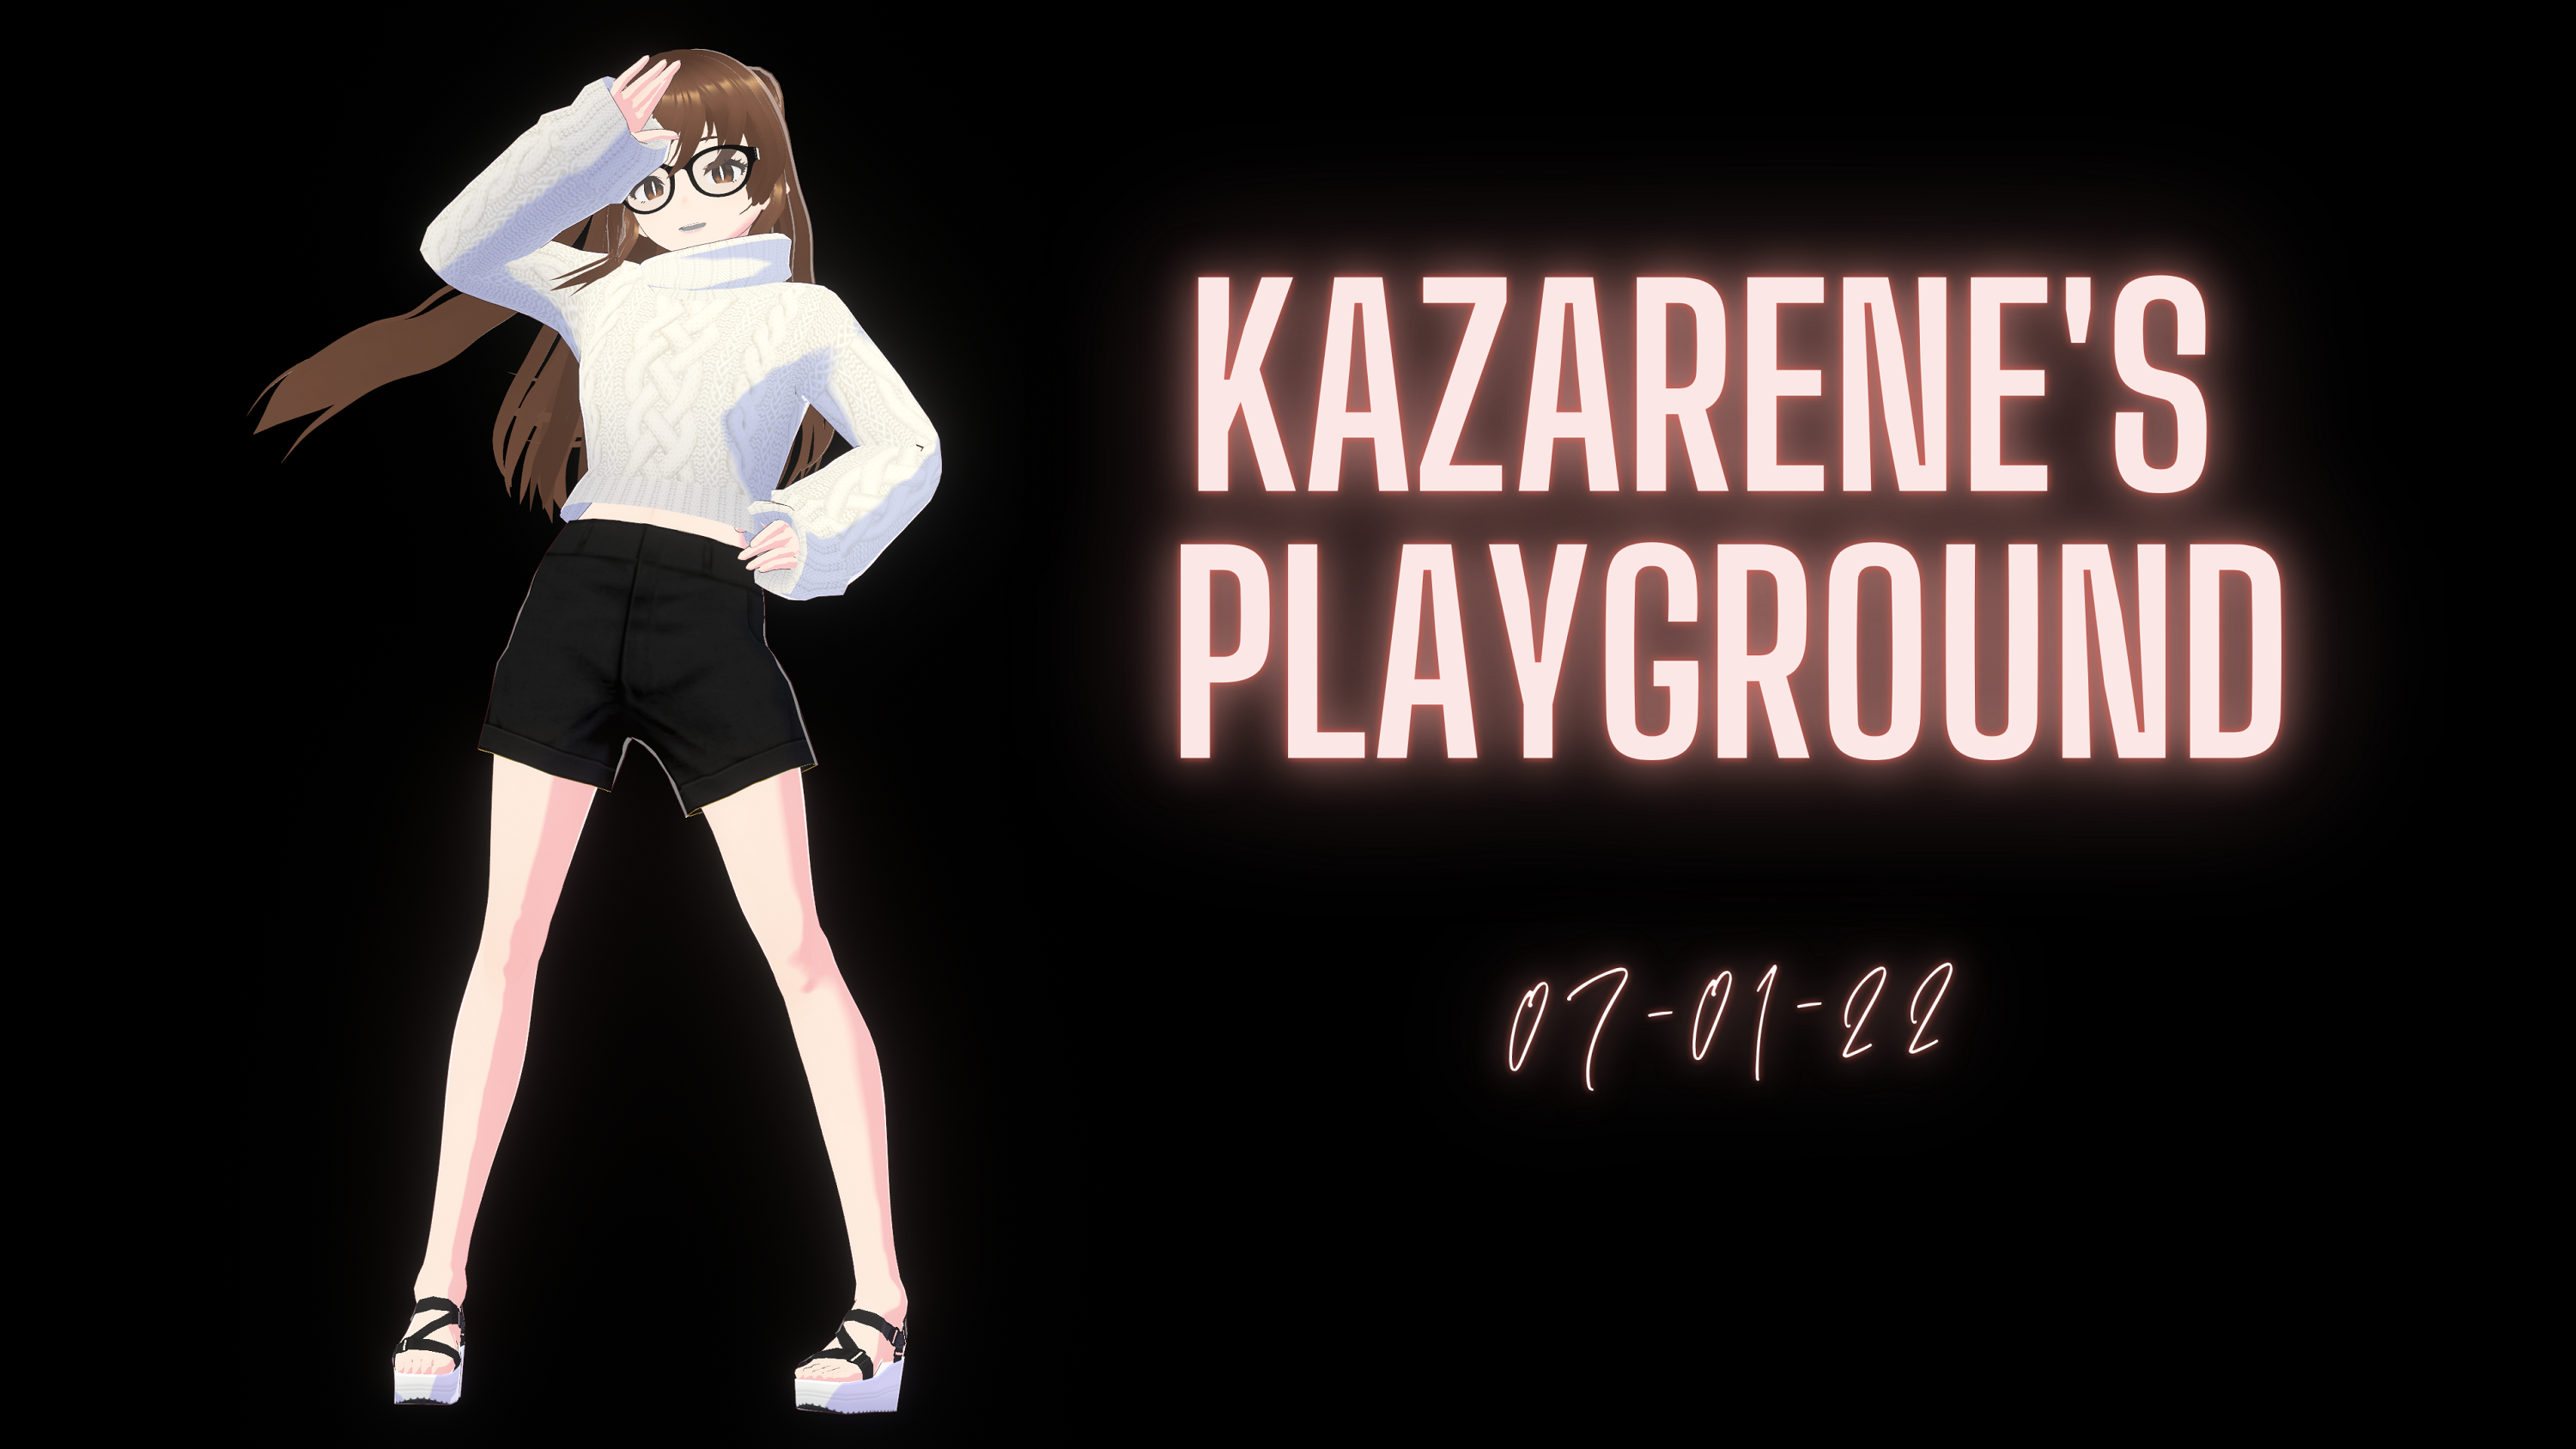 Kazarene's Playground